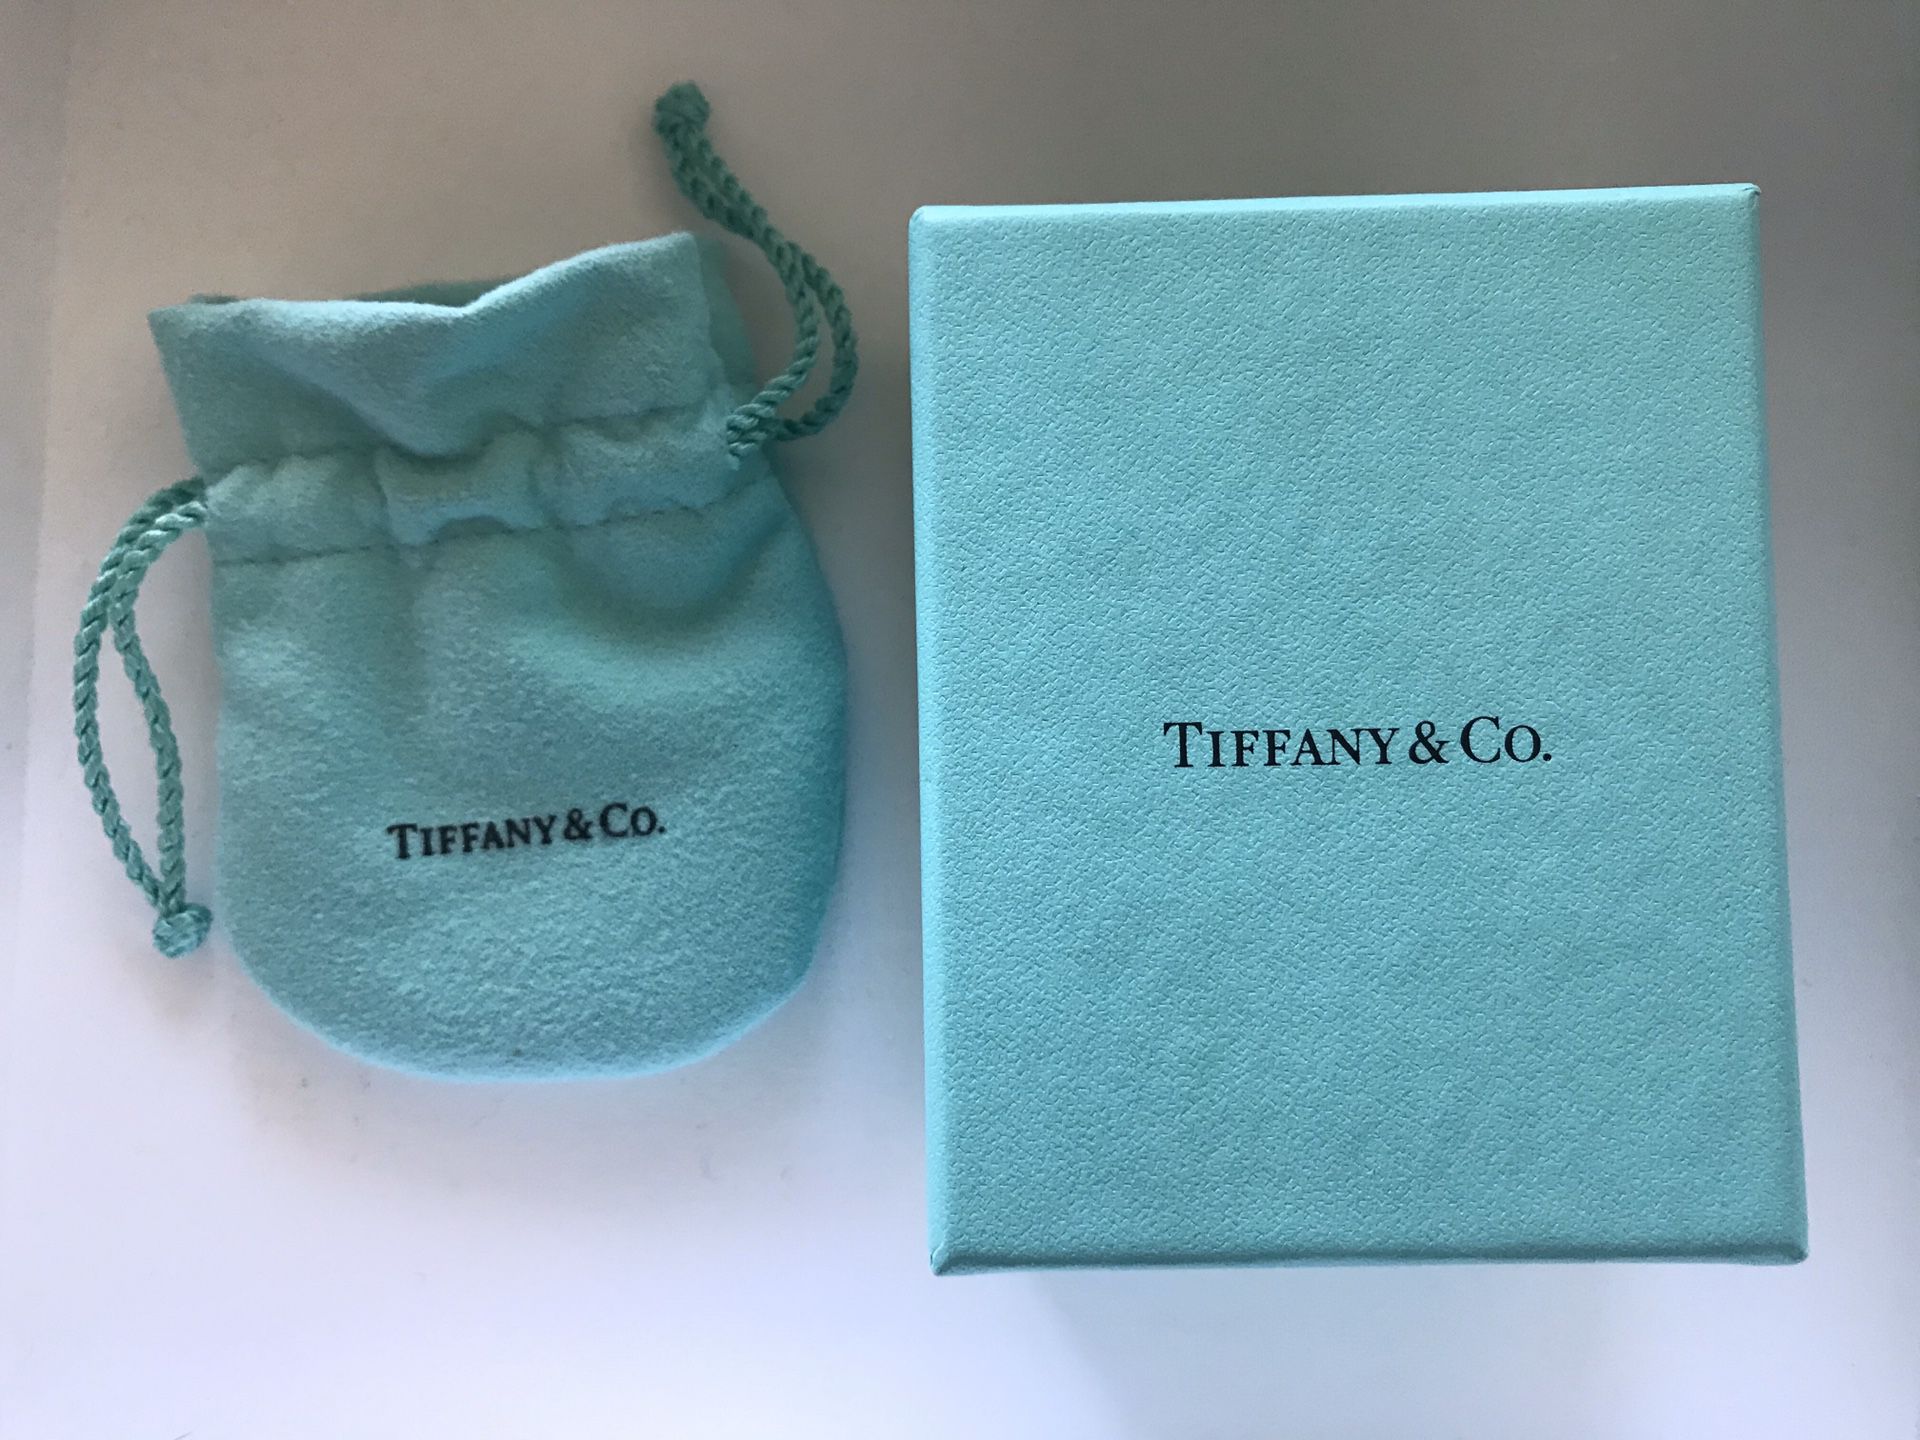 Tiffany & Co - box and bag